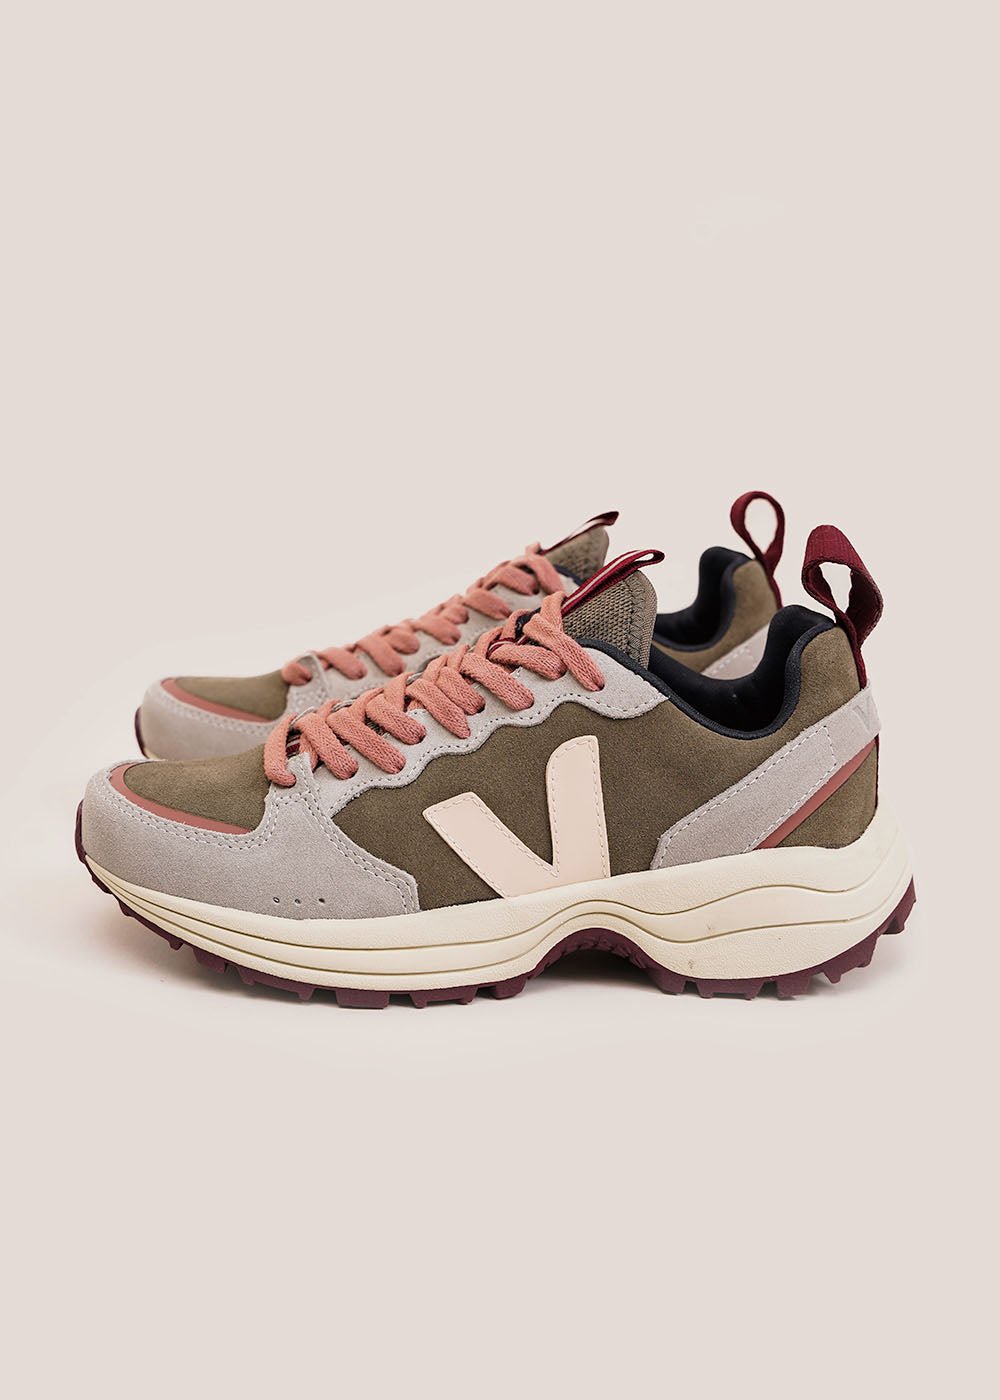 Venturi Sneakers in Kaki Sable Oxford-Grey by VEJA – New Classics Studios